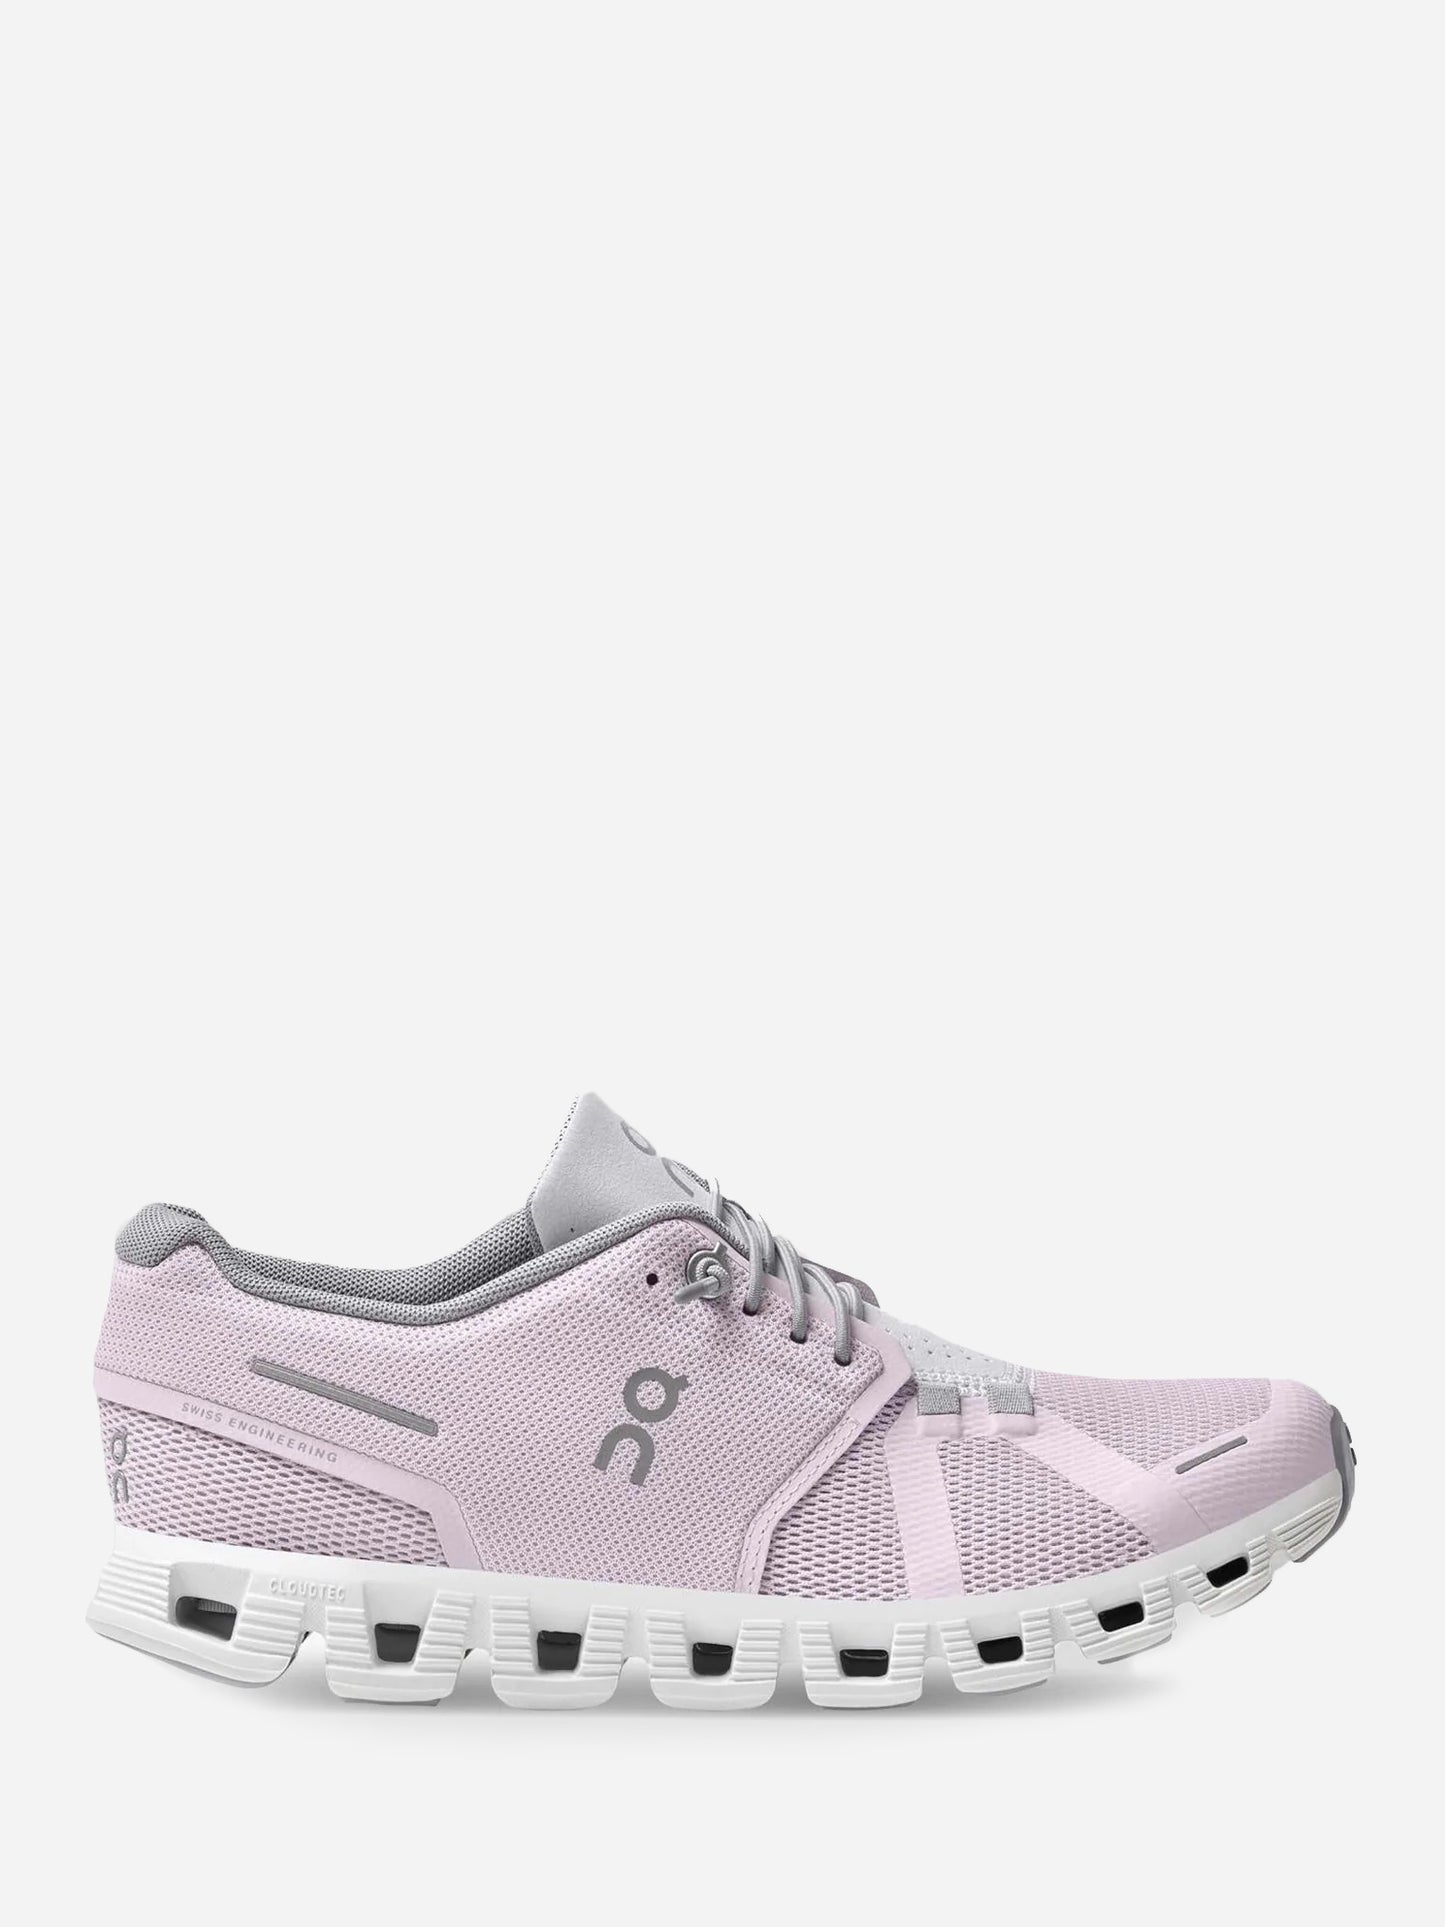 ON Women's Cloud 5 Sneaker